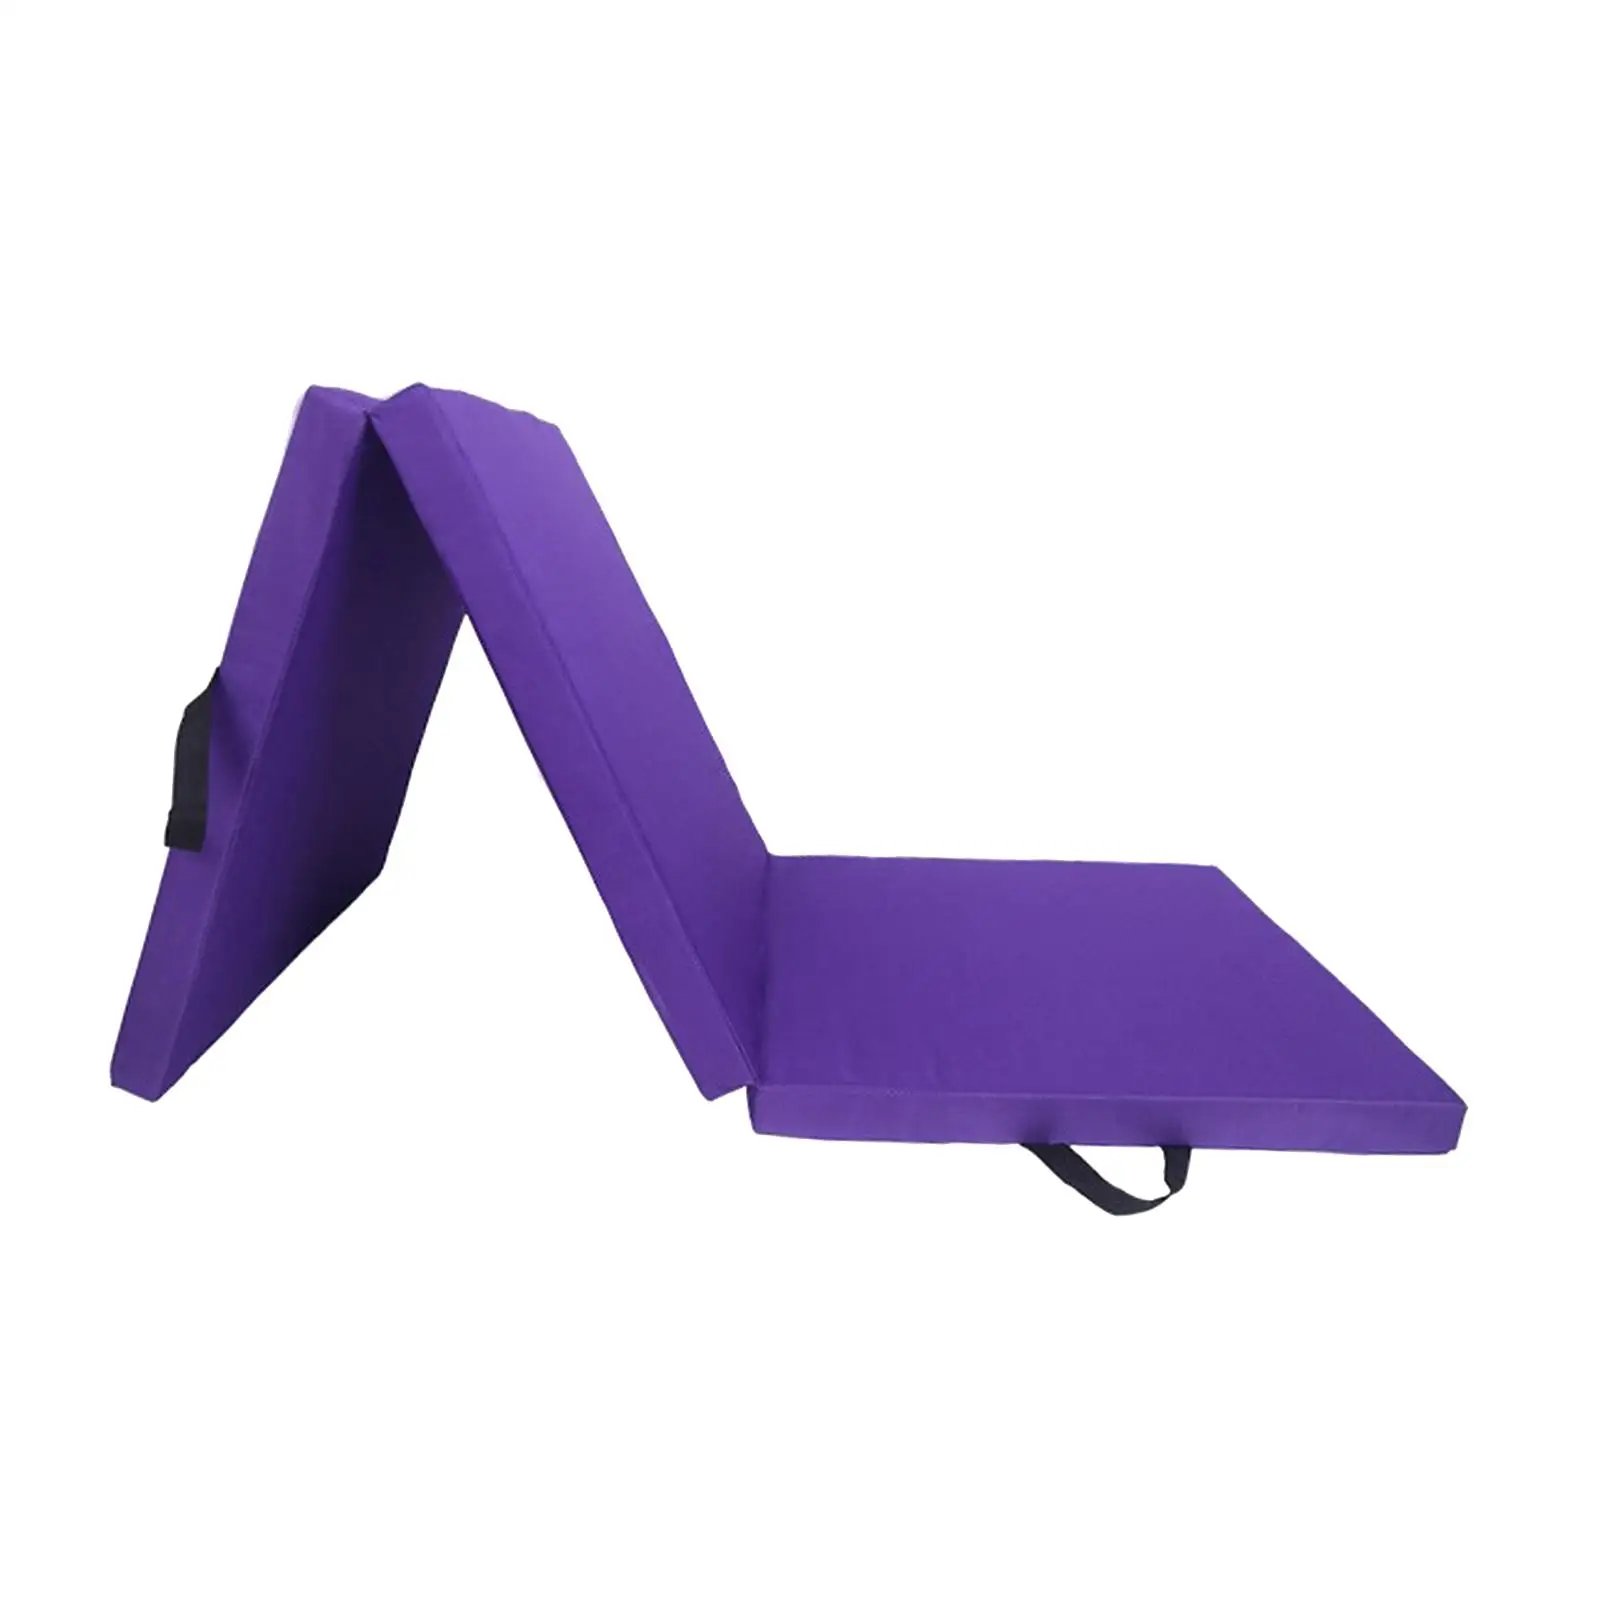 Folding Exercise Mat Cushion Thick Unisex Yoga Pad Yoga Mat for Training